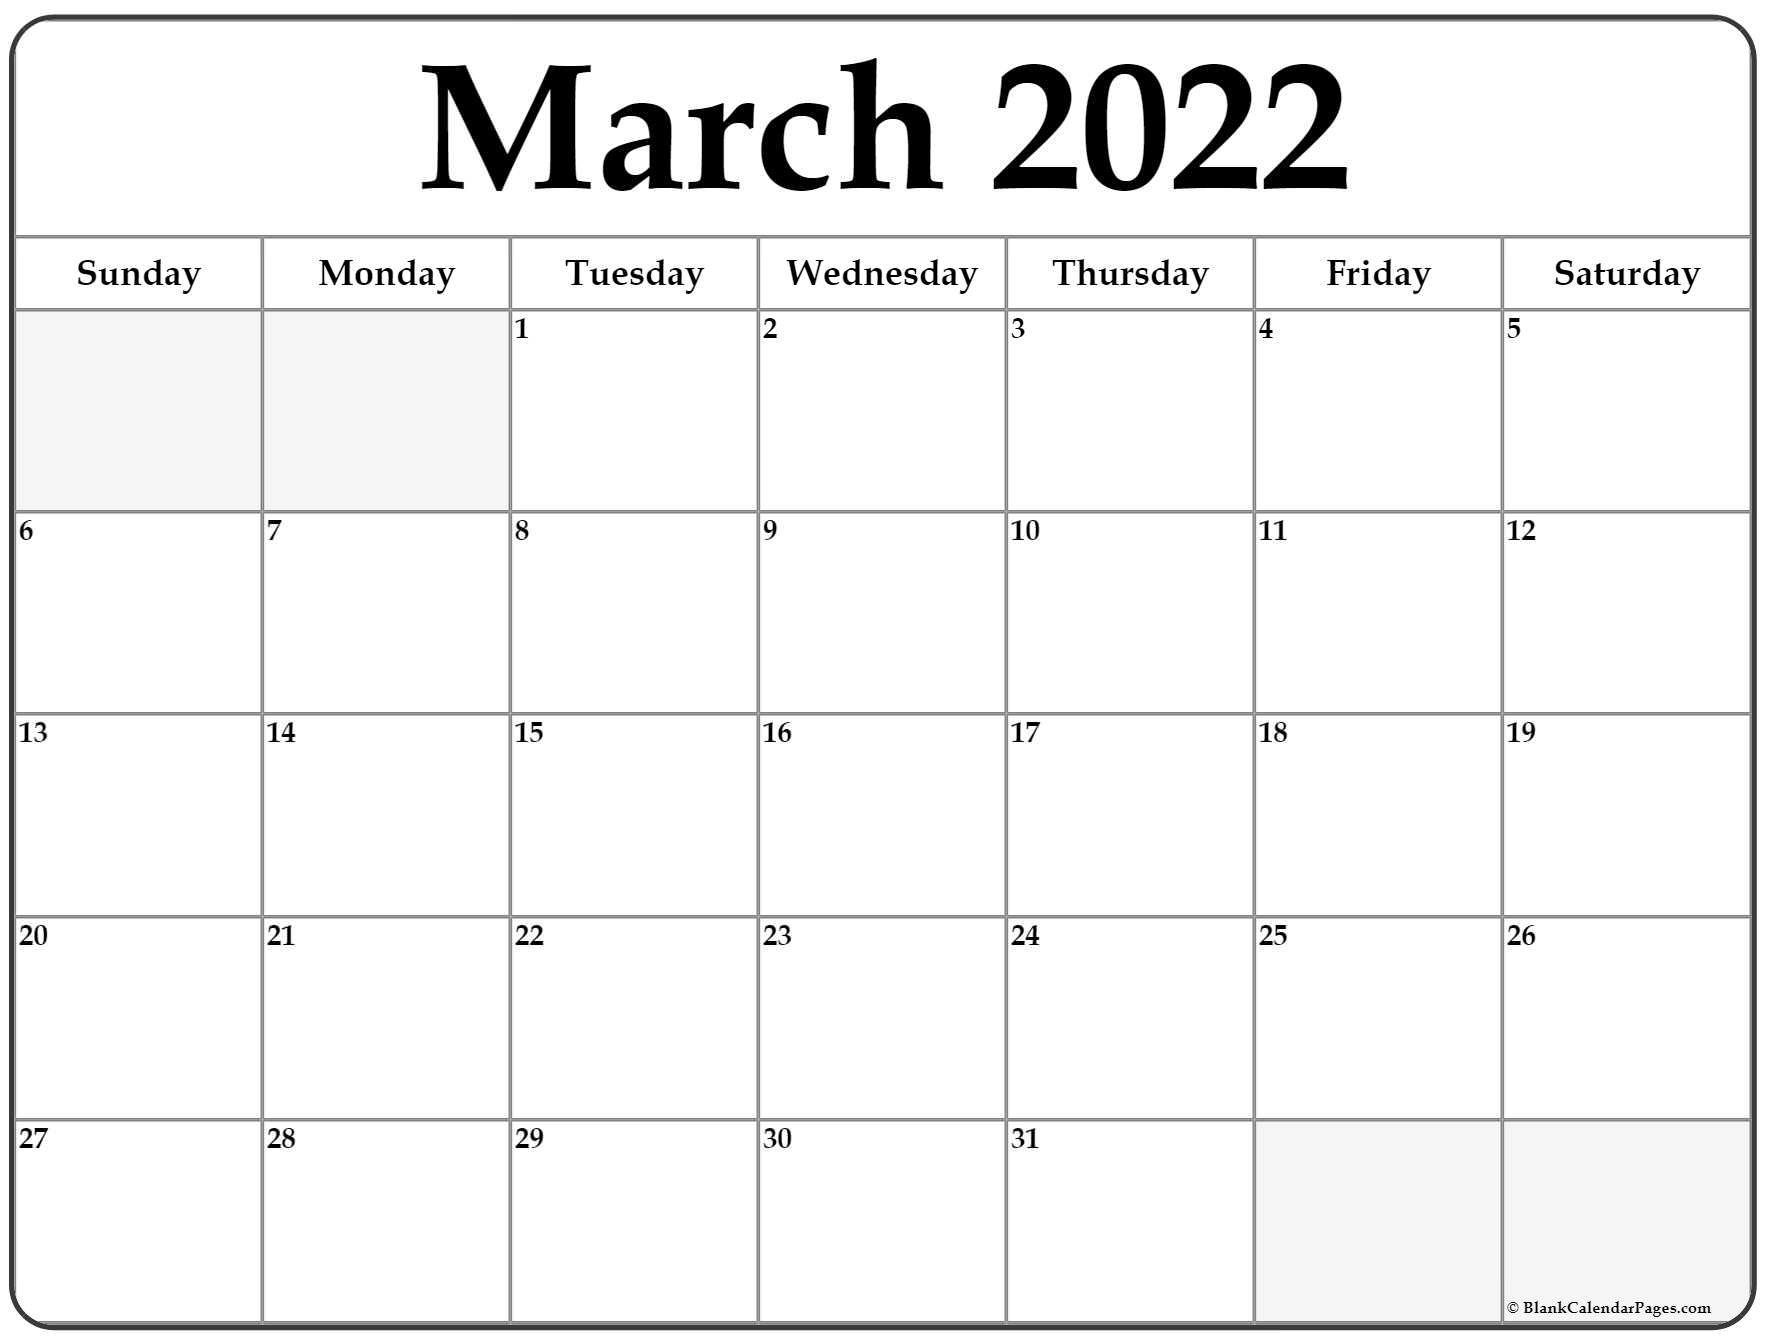 Catch March 2022 Calendar Australia